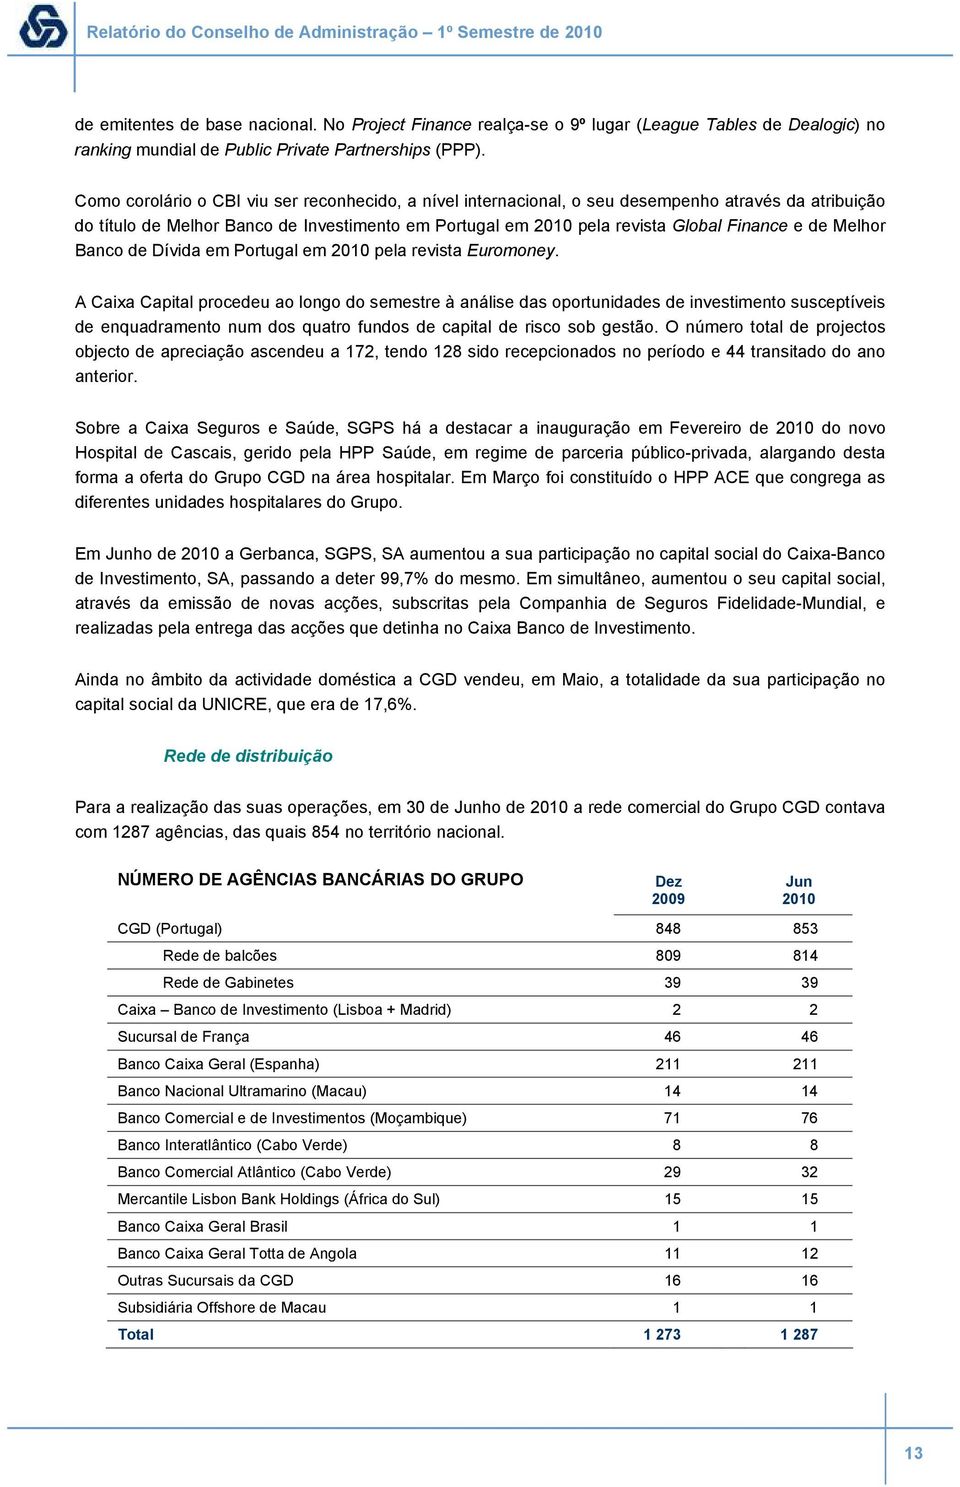 Como corolário o CBI viu ser reconhecido, a nível internacional, o seu desempenho através da atribuição do título de Melhor Banco de Investimento em Portugal em 2010 pela revista Global Finance e de